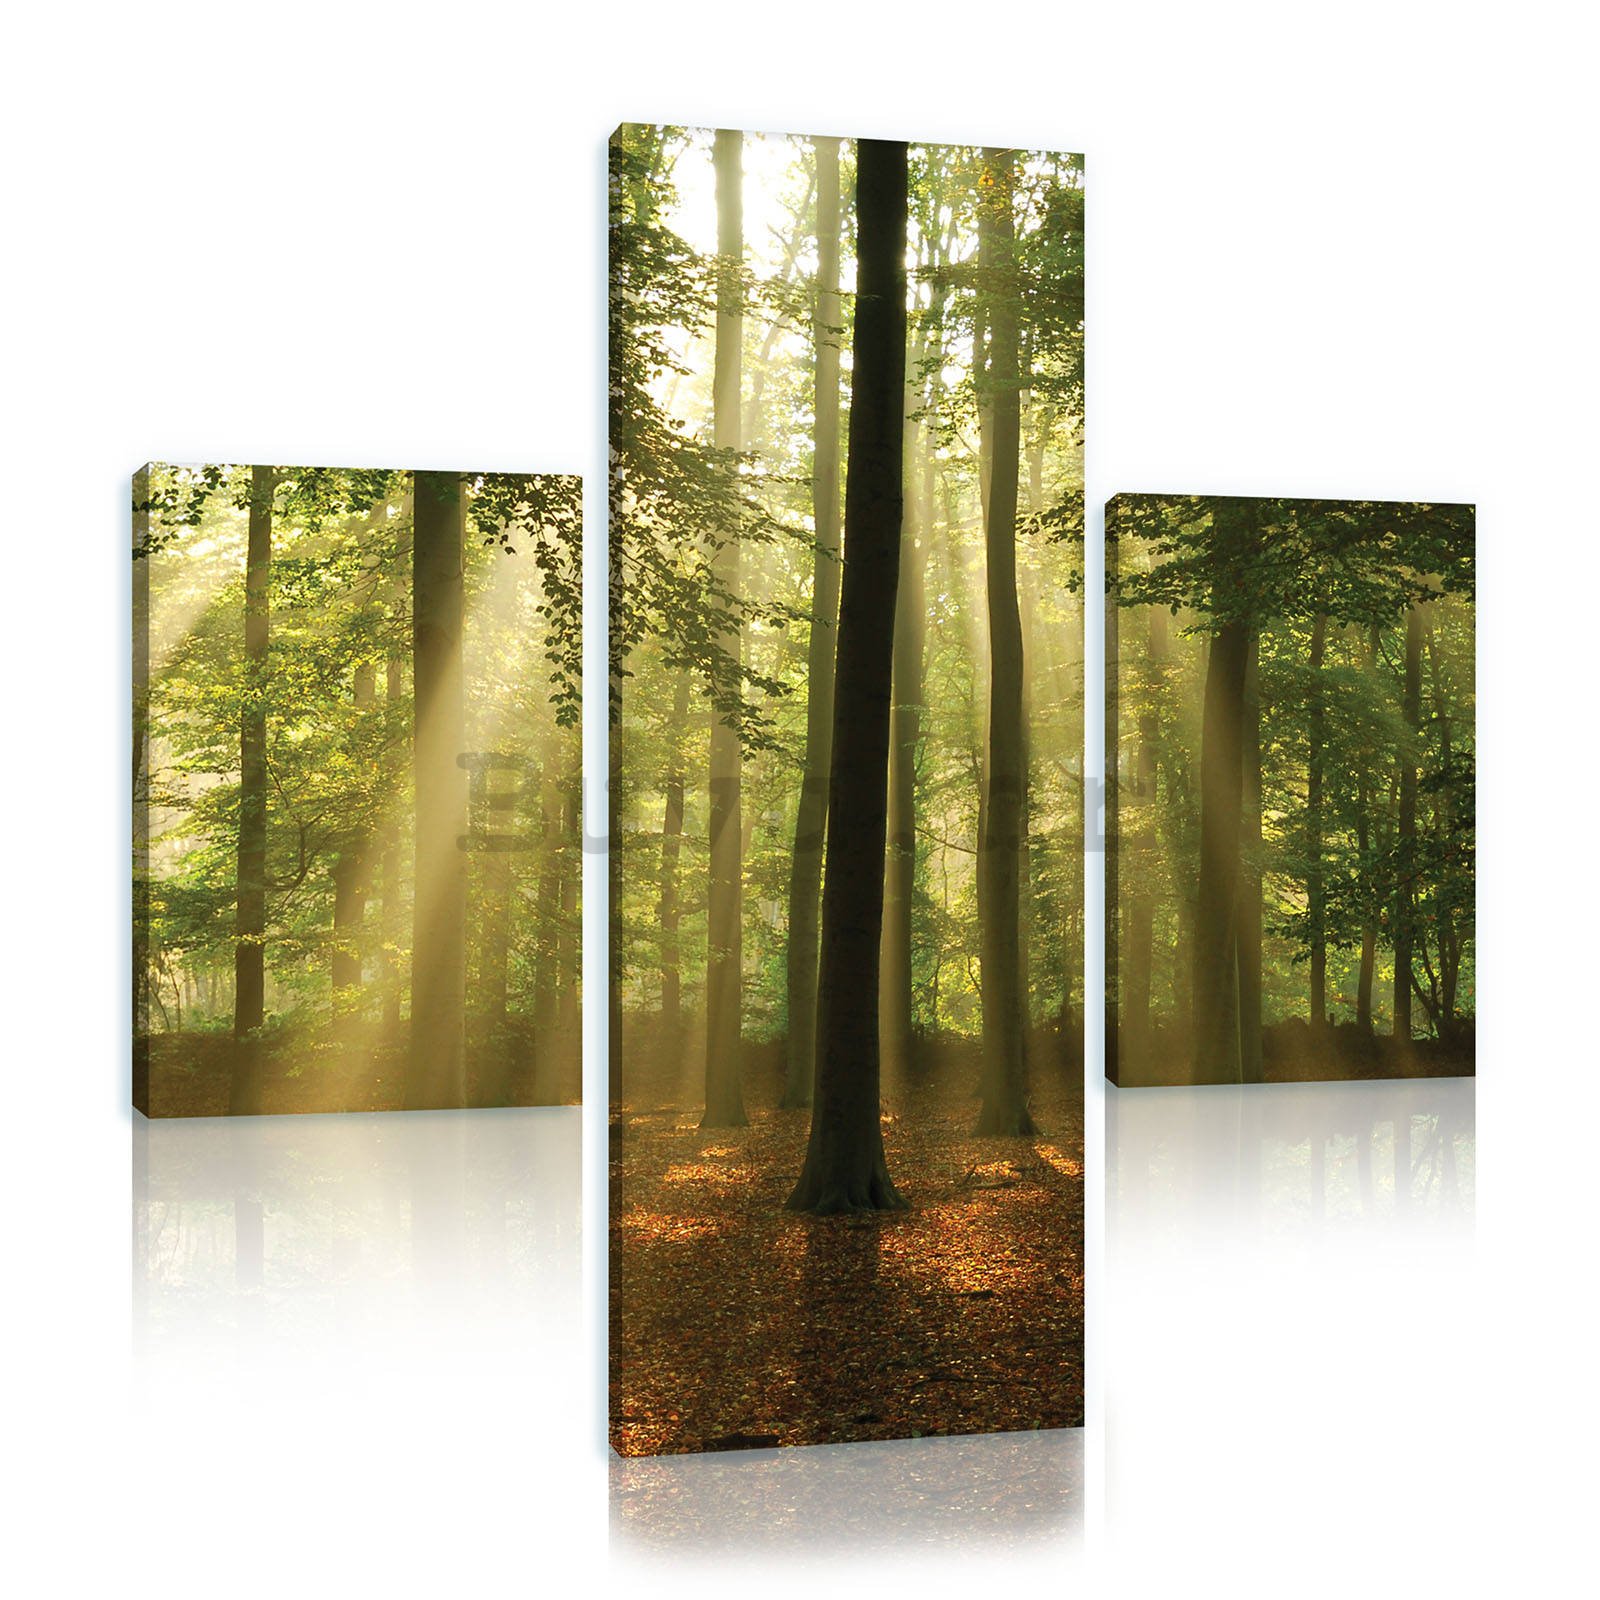 Slika na platnu: Sunce u šumi (4) - set 1kom 80x30 cm i 2kom 37,5x24,8 cm 